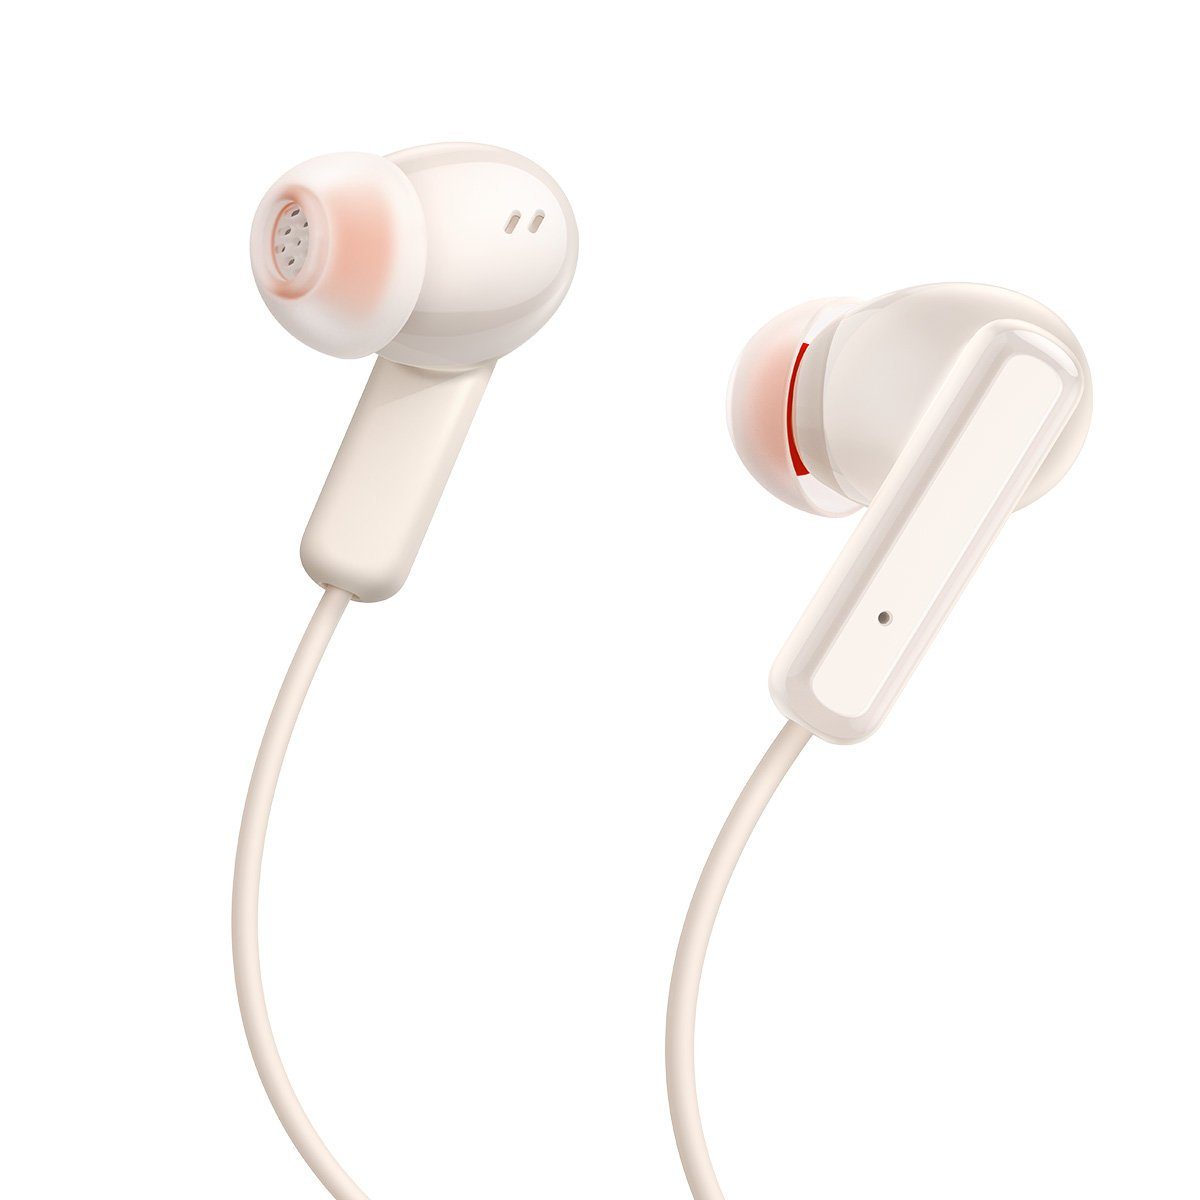 Bluetooth der creme, 5.2, Baseus U2 Dauer Musikwiedergabe: 5.2 In-Ear-Kopfhörer 15 Wireless Baseus Stunden) Earphones Bowie Bluetooth In-Ear-Kopfhörer, etwa (Bluetooth, Neckband Creamy-white Technologie, TWS,